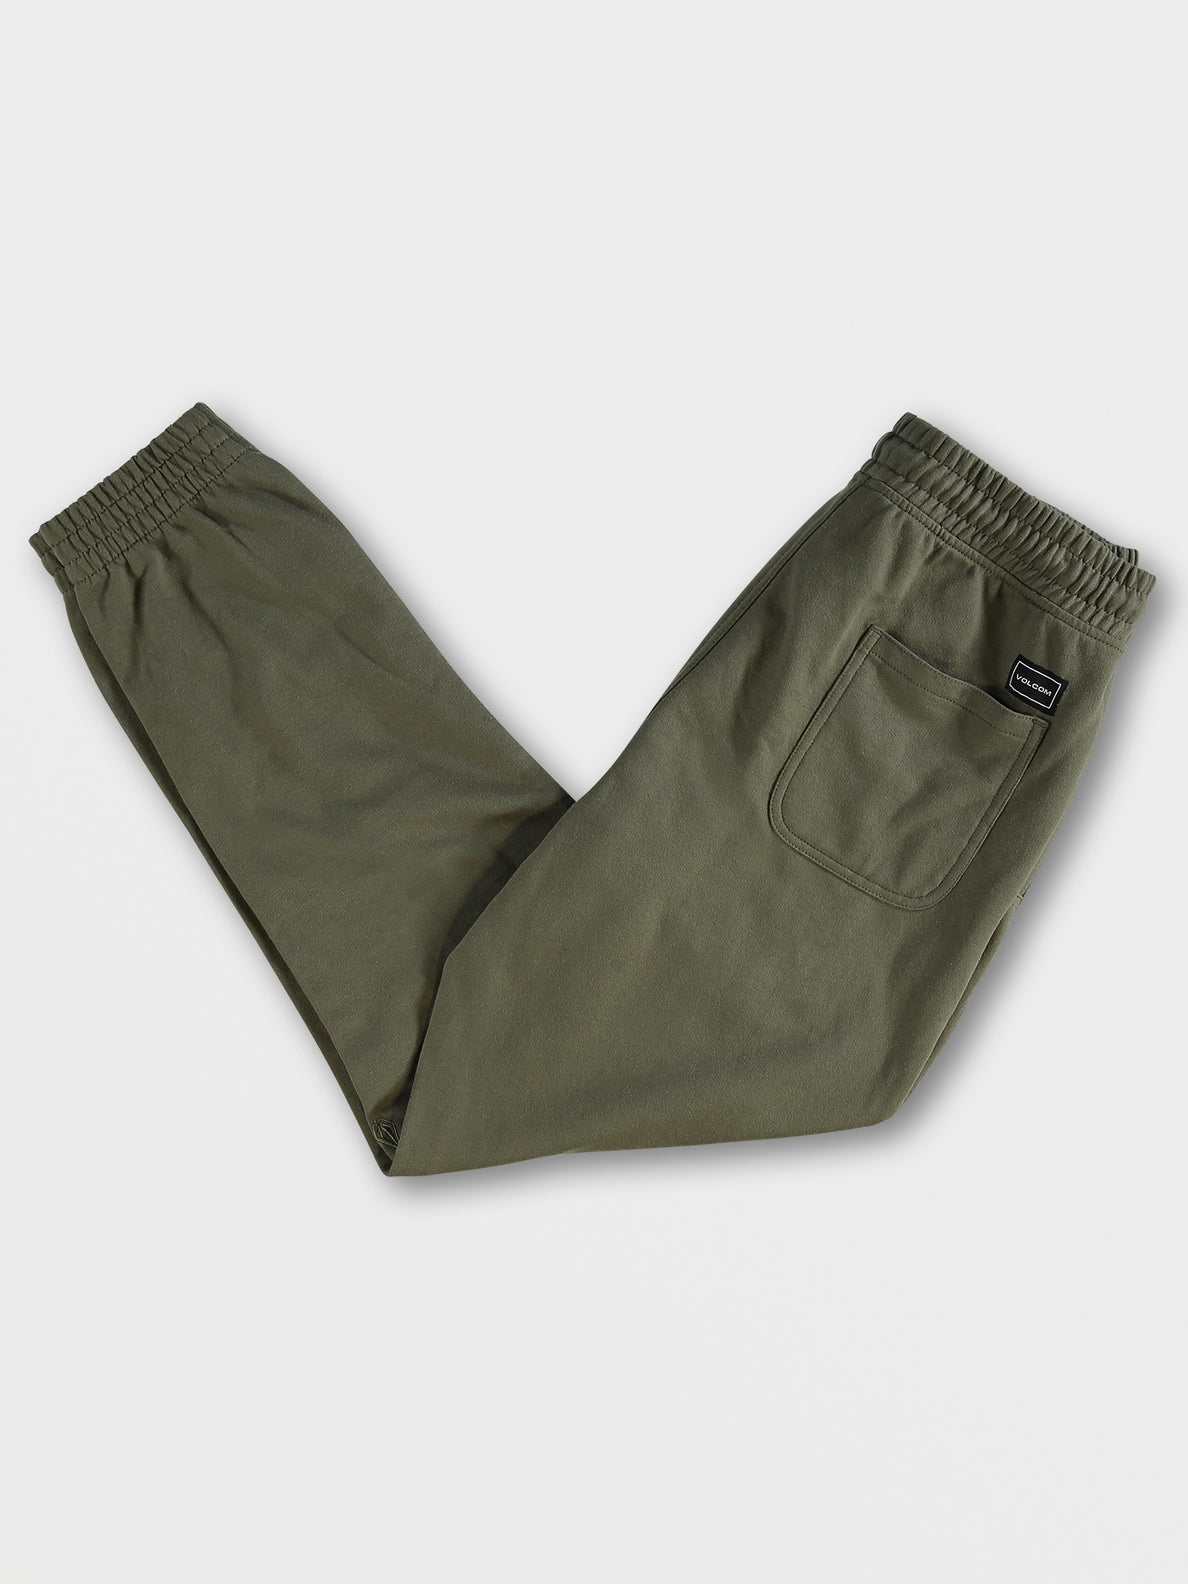 Foreman Fleece Pants - Military